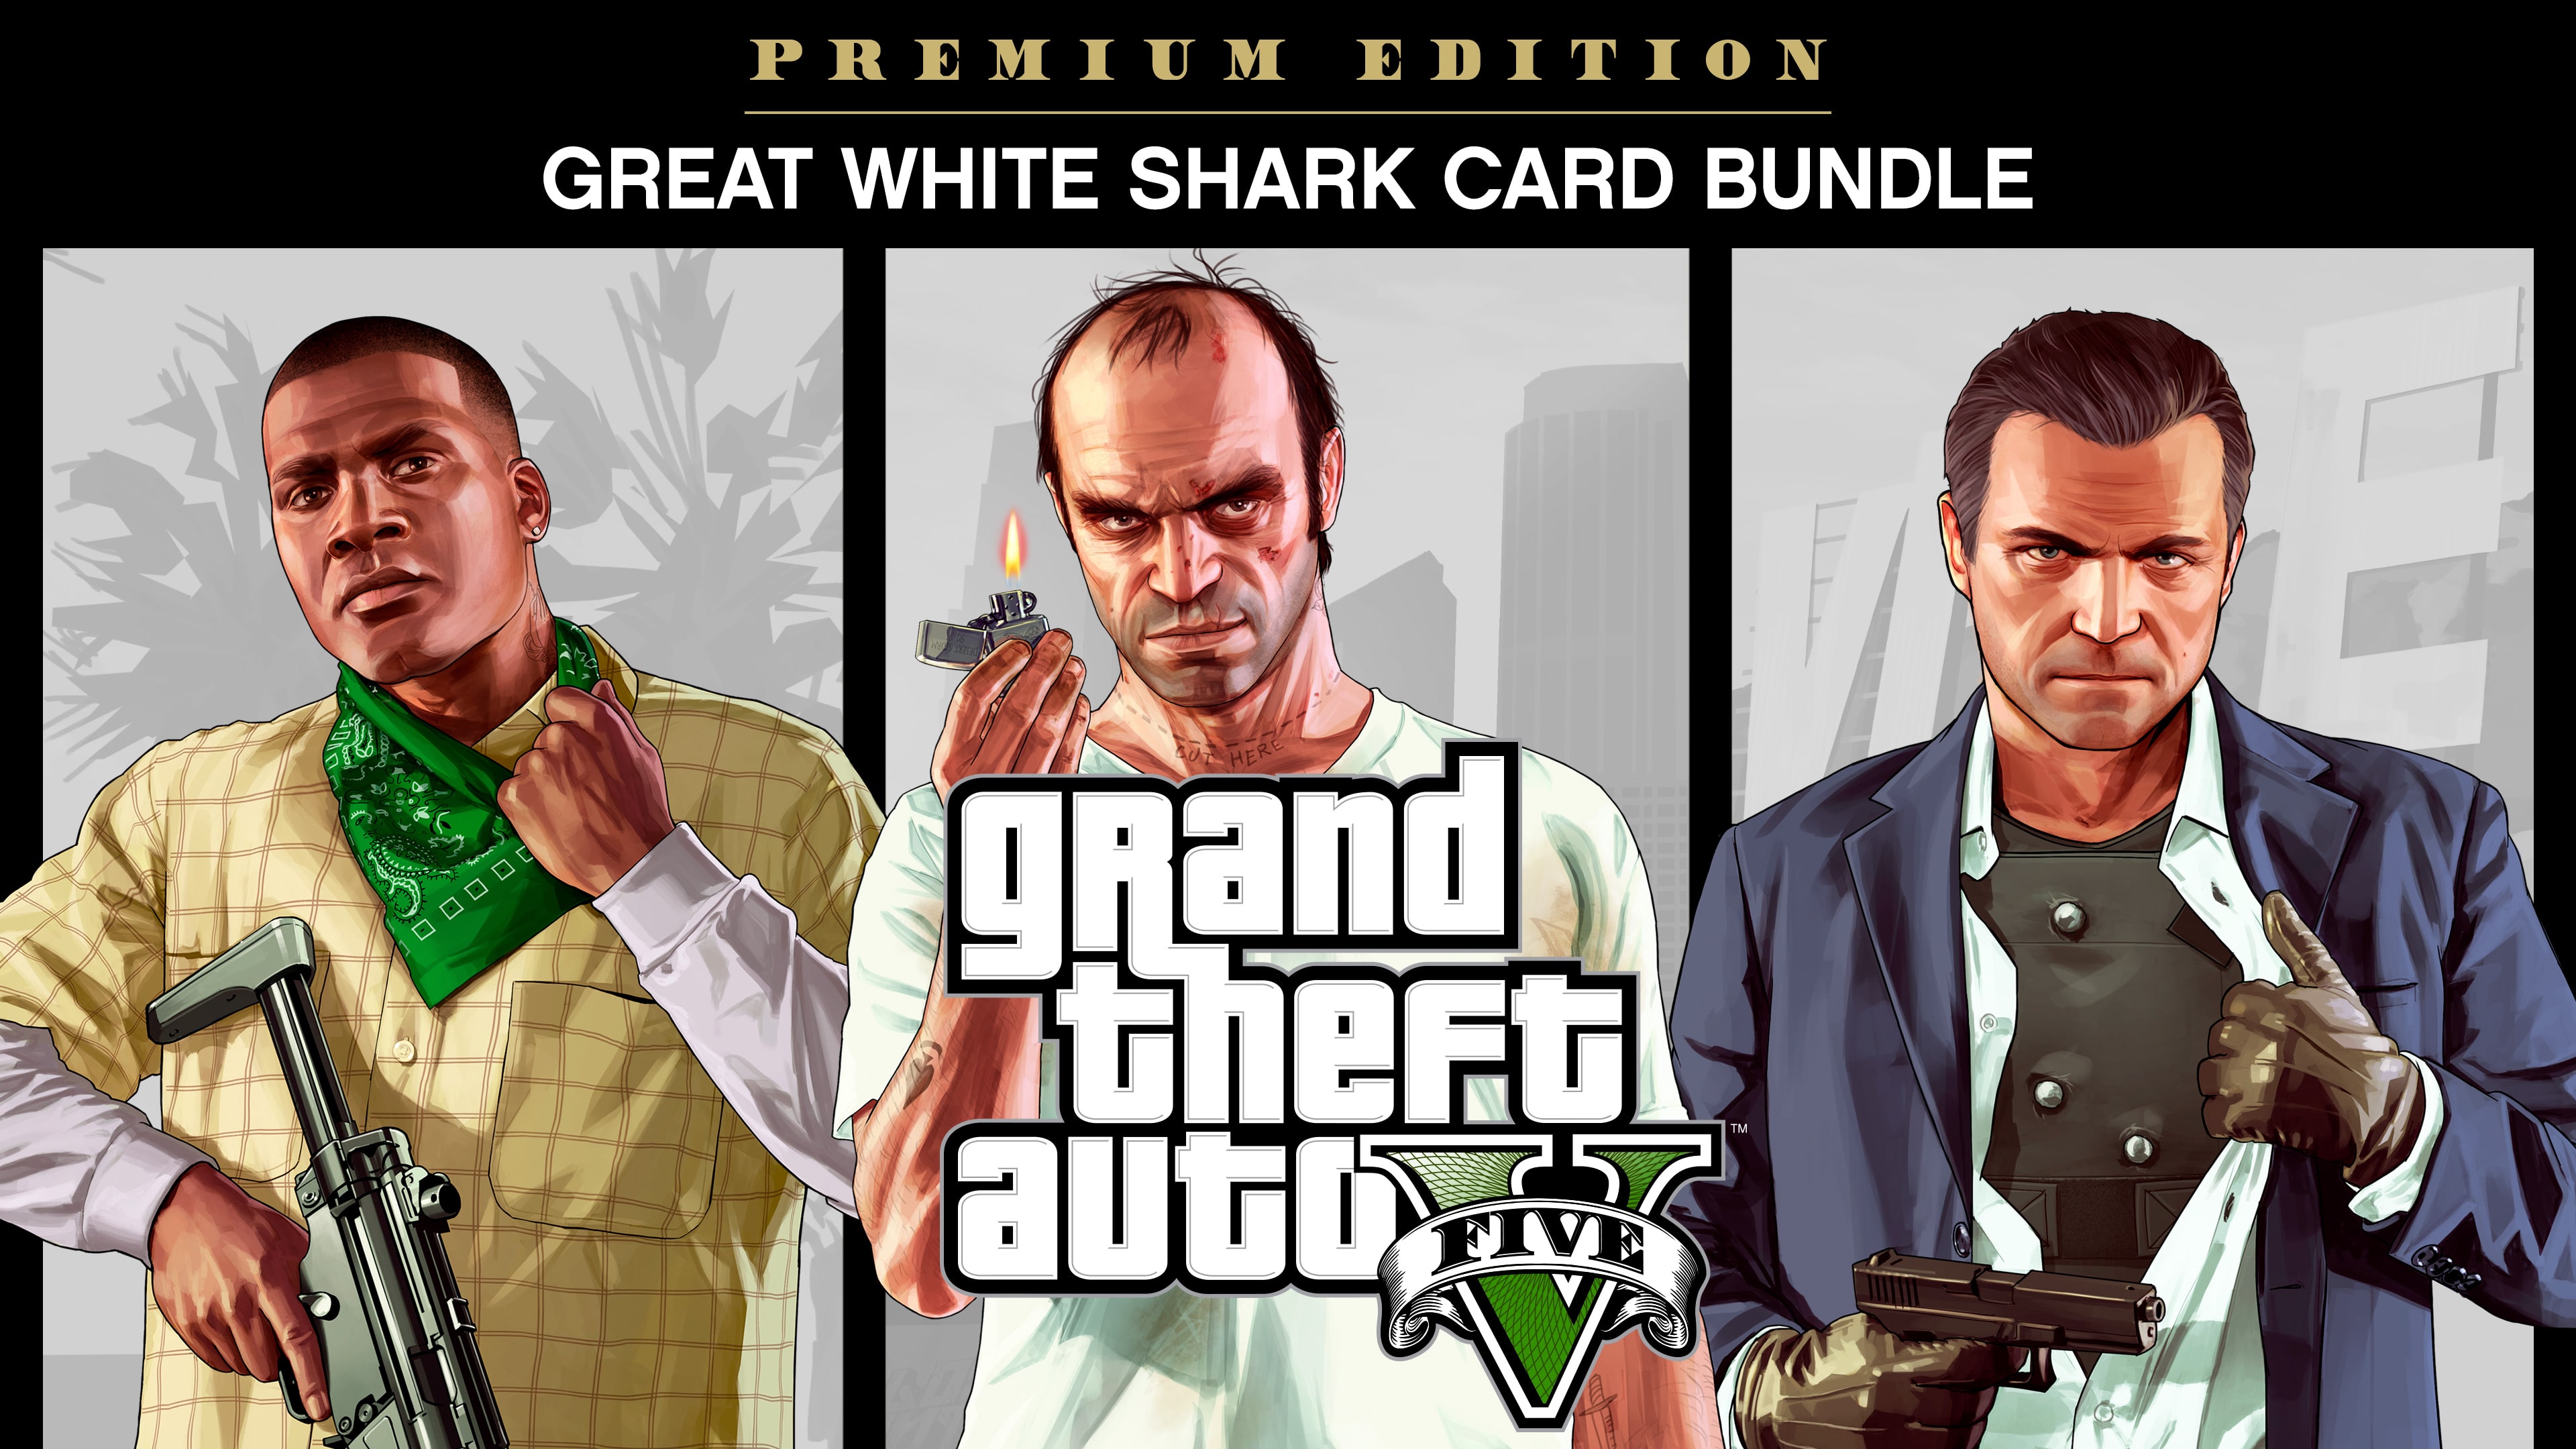 Grand Theft Auto V: Edición Premium y tarjeta Gran tiburón blanco